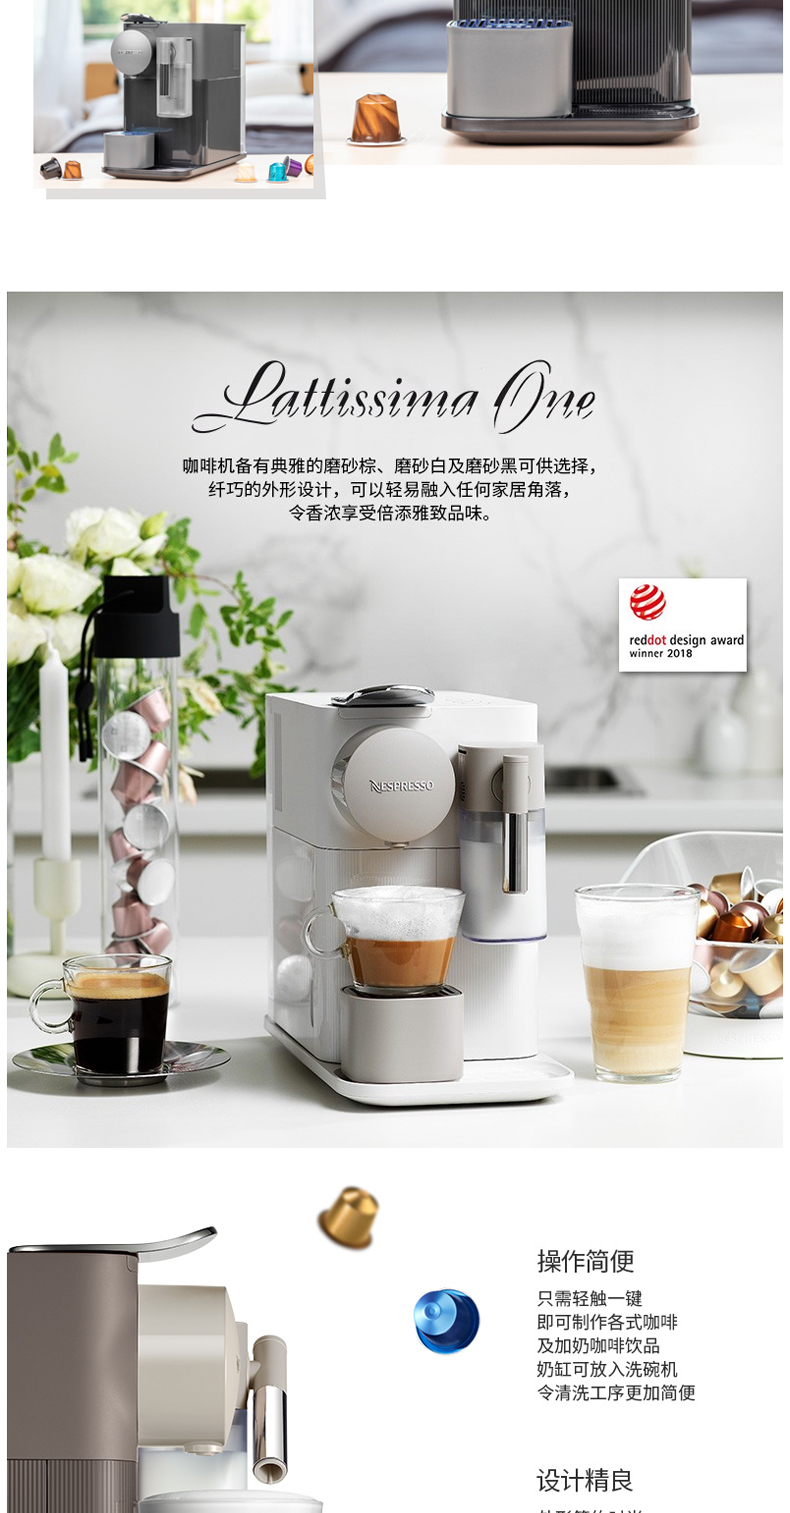 奈斯派索 Nespresso Lattissima one 全自动胶囊咖啡机 F111 (磨砂白)